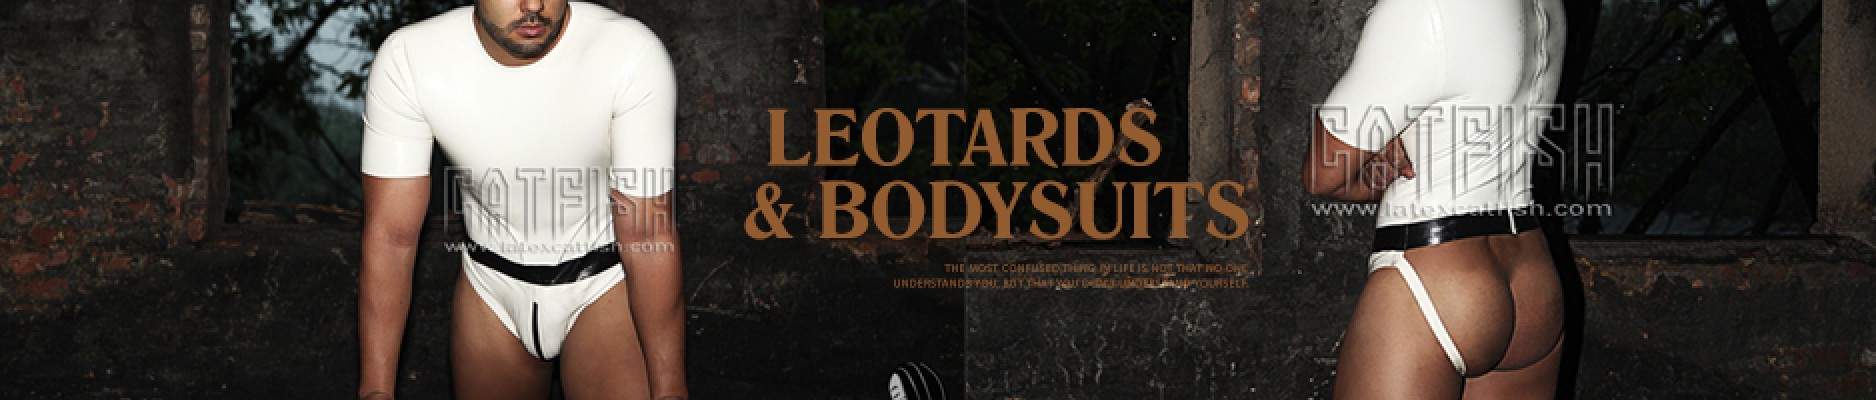 Leotards & Bodysuits